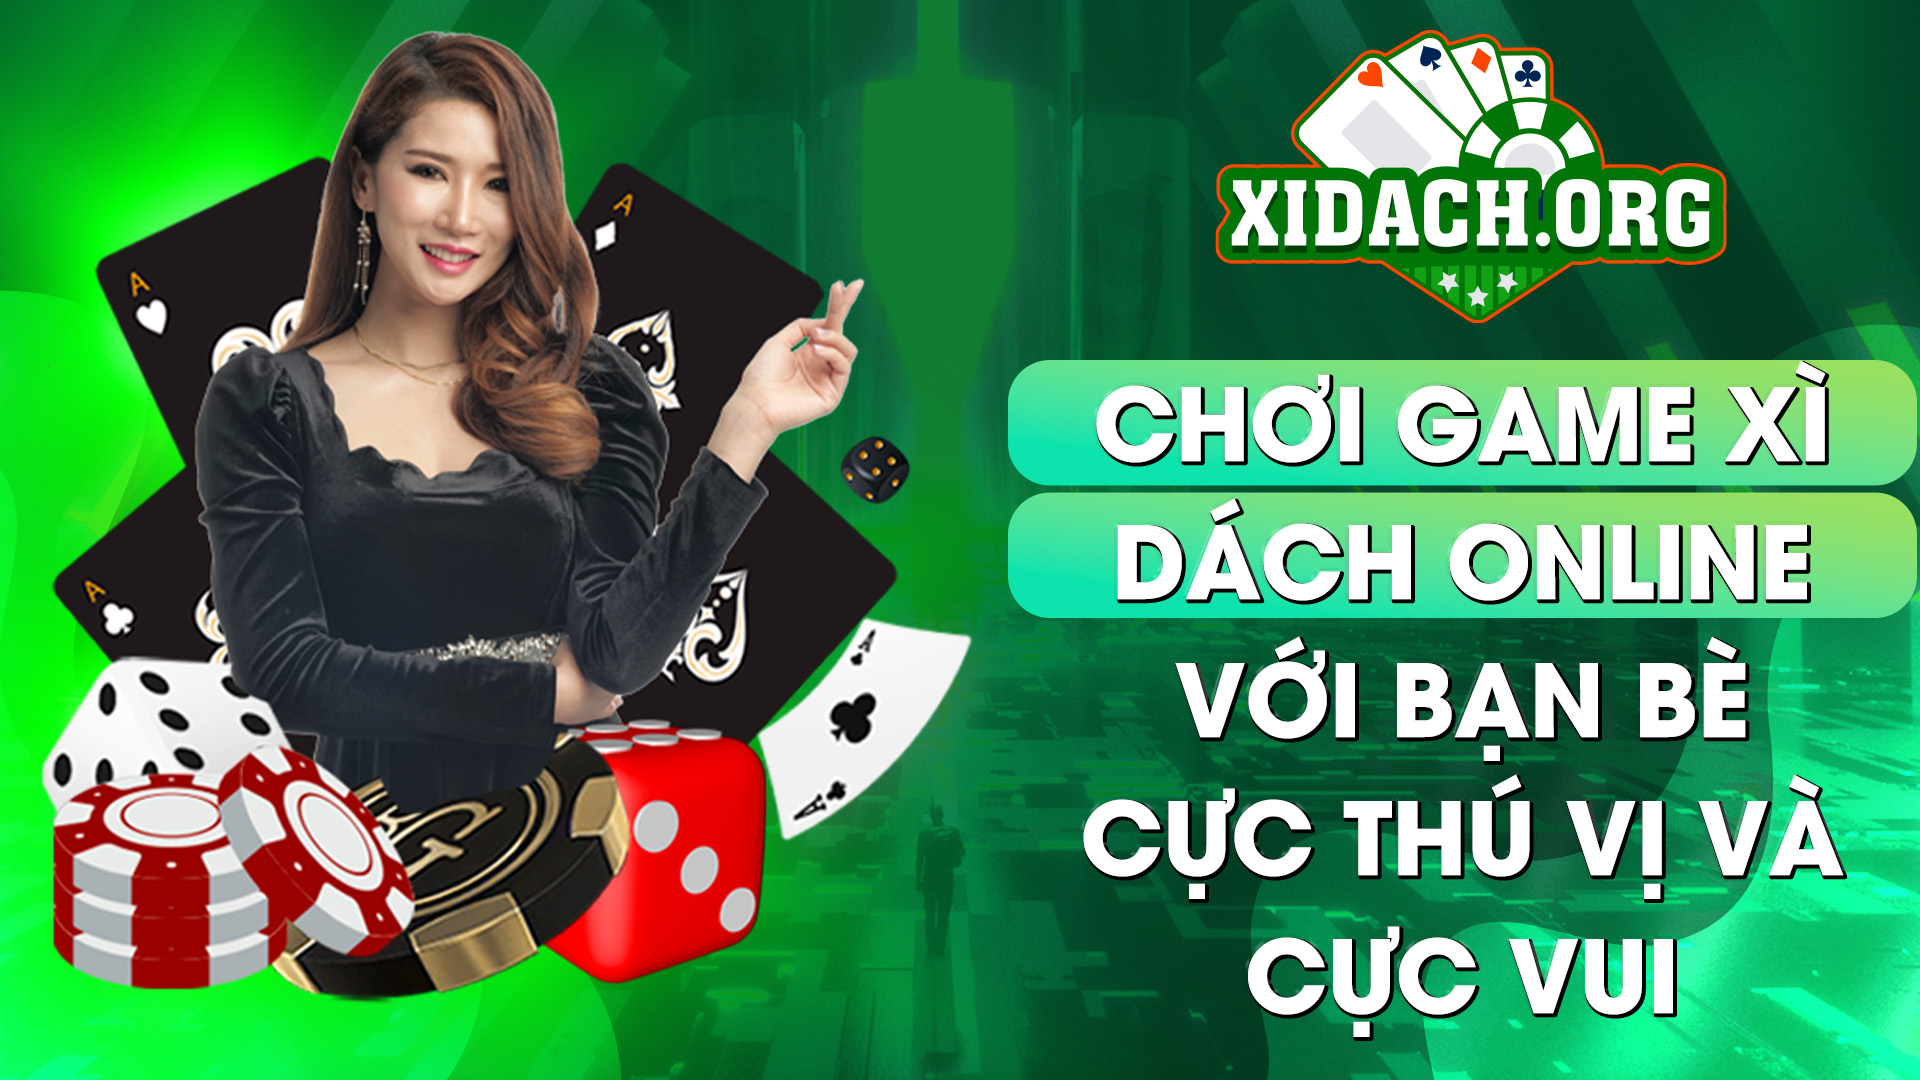 959 Choi Game Xi Dach Online Cung Ban Be